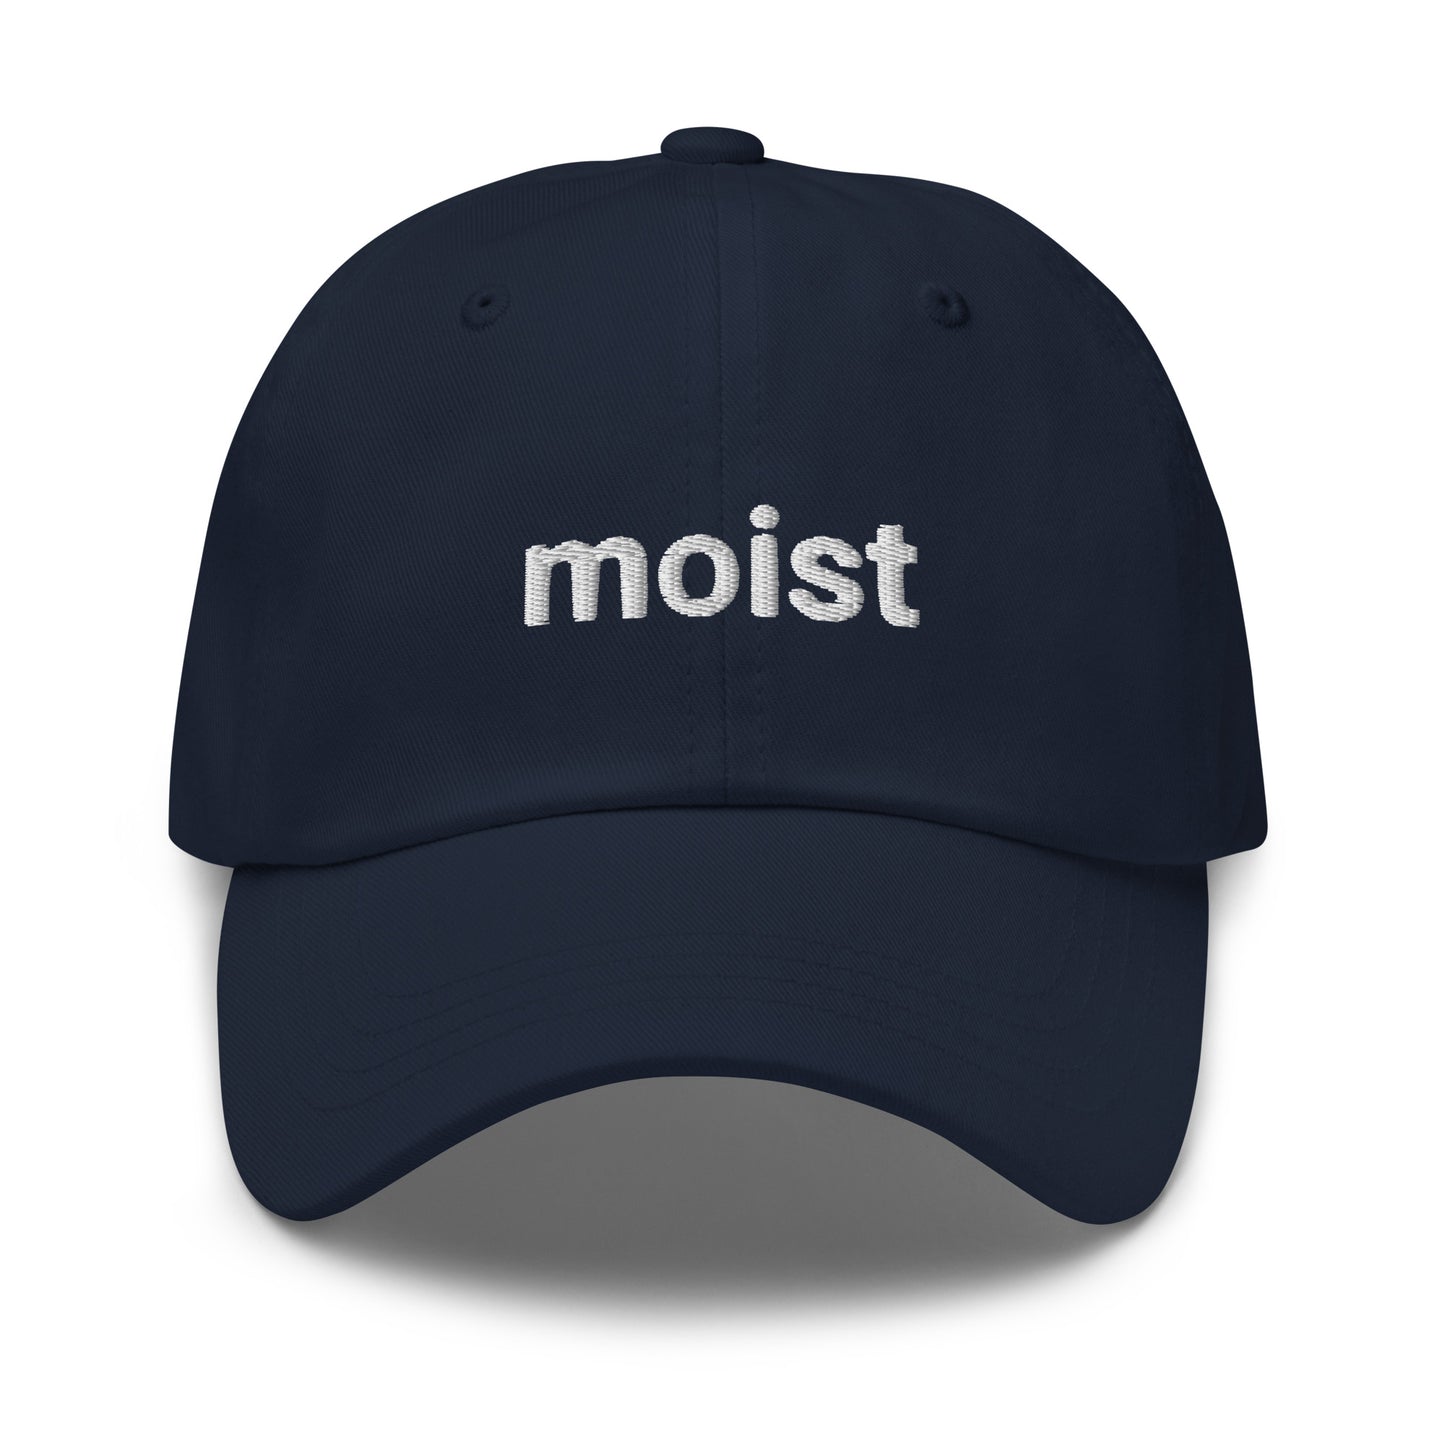 moist hat